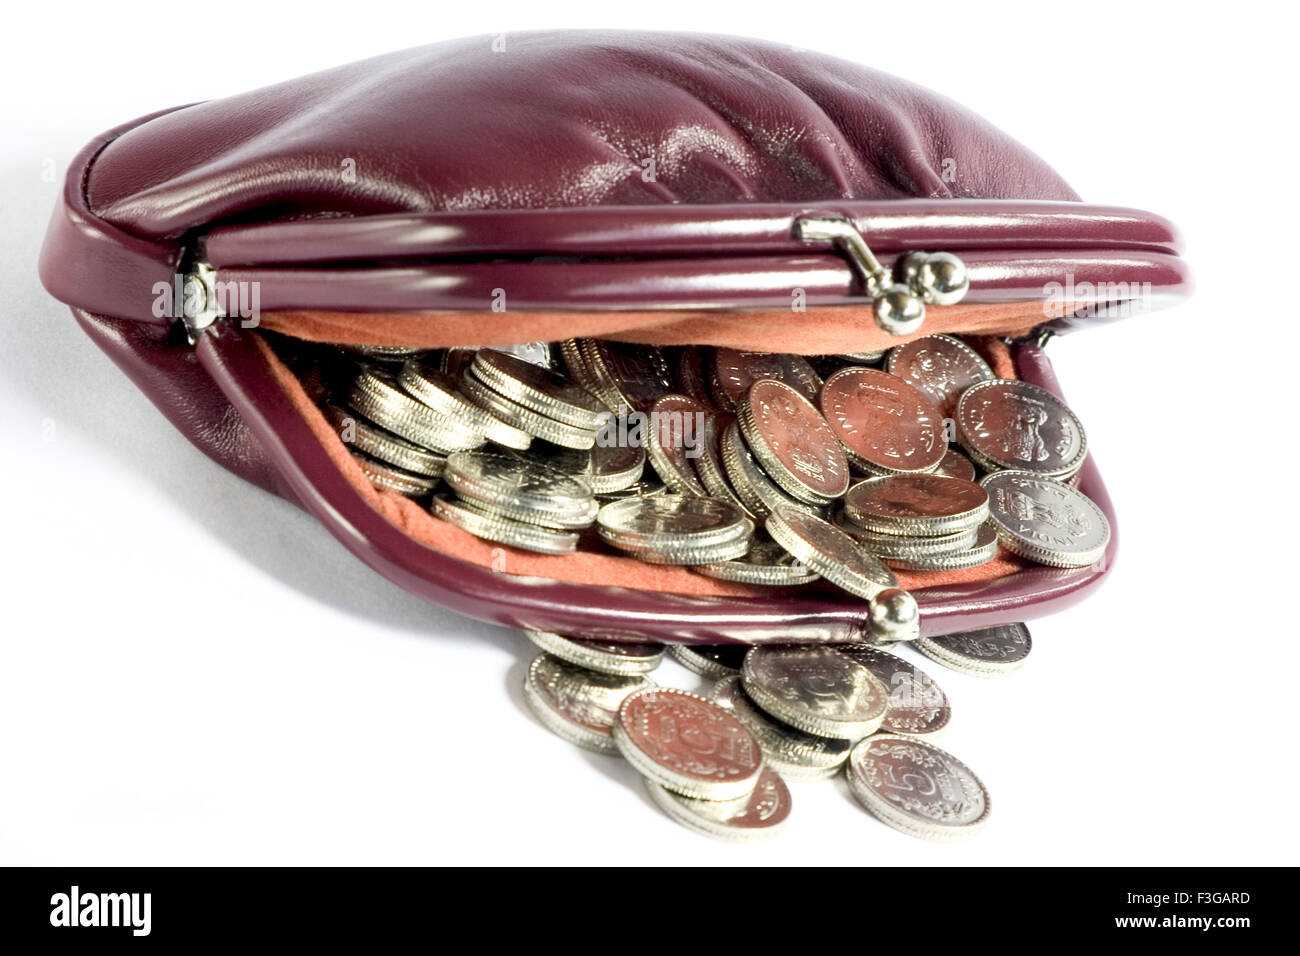 Un déverrouiller mesdames sac à main ou portefeuille exposé beaucoup de monnaie indienne 5 roupies de pièces sur fond blanc Banque D'Images